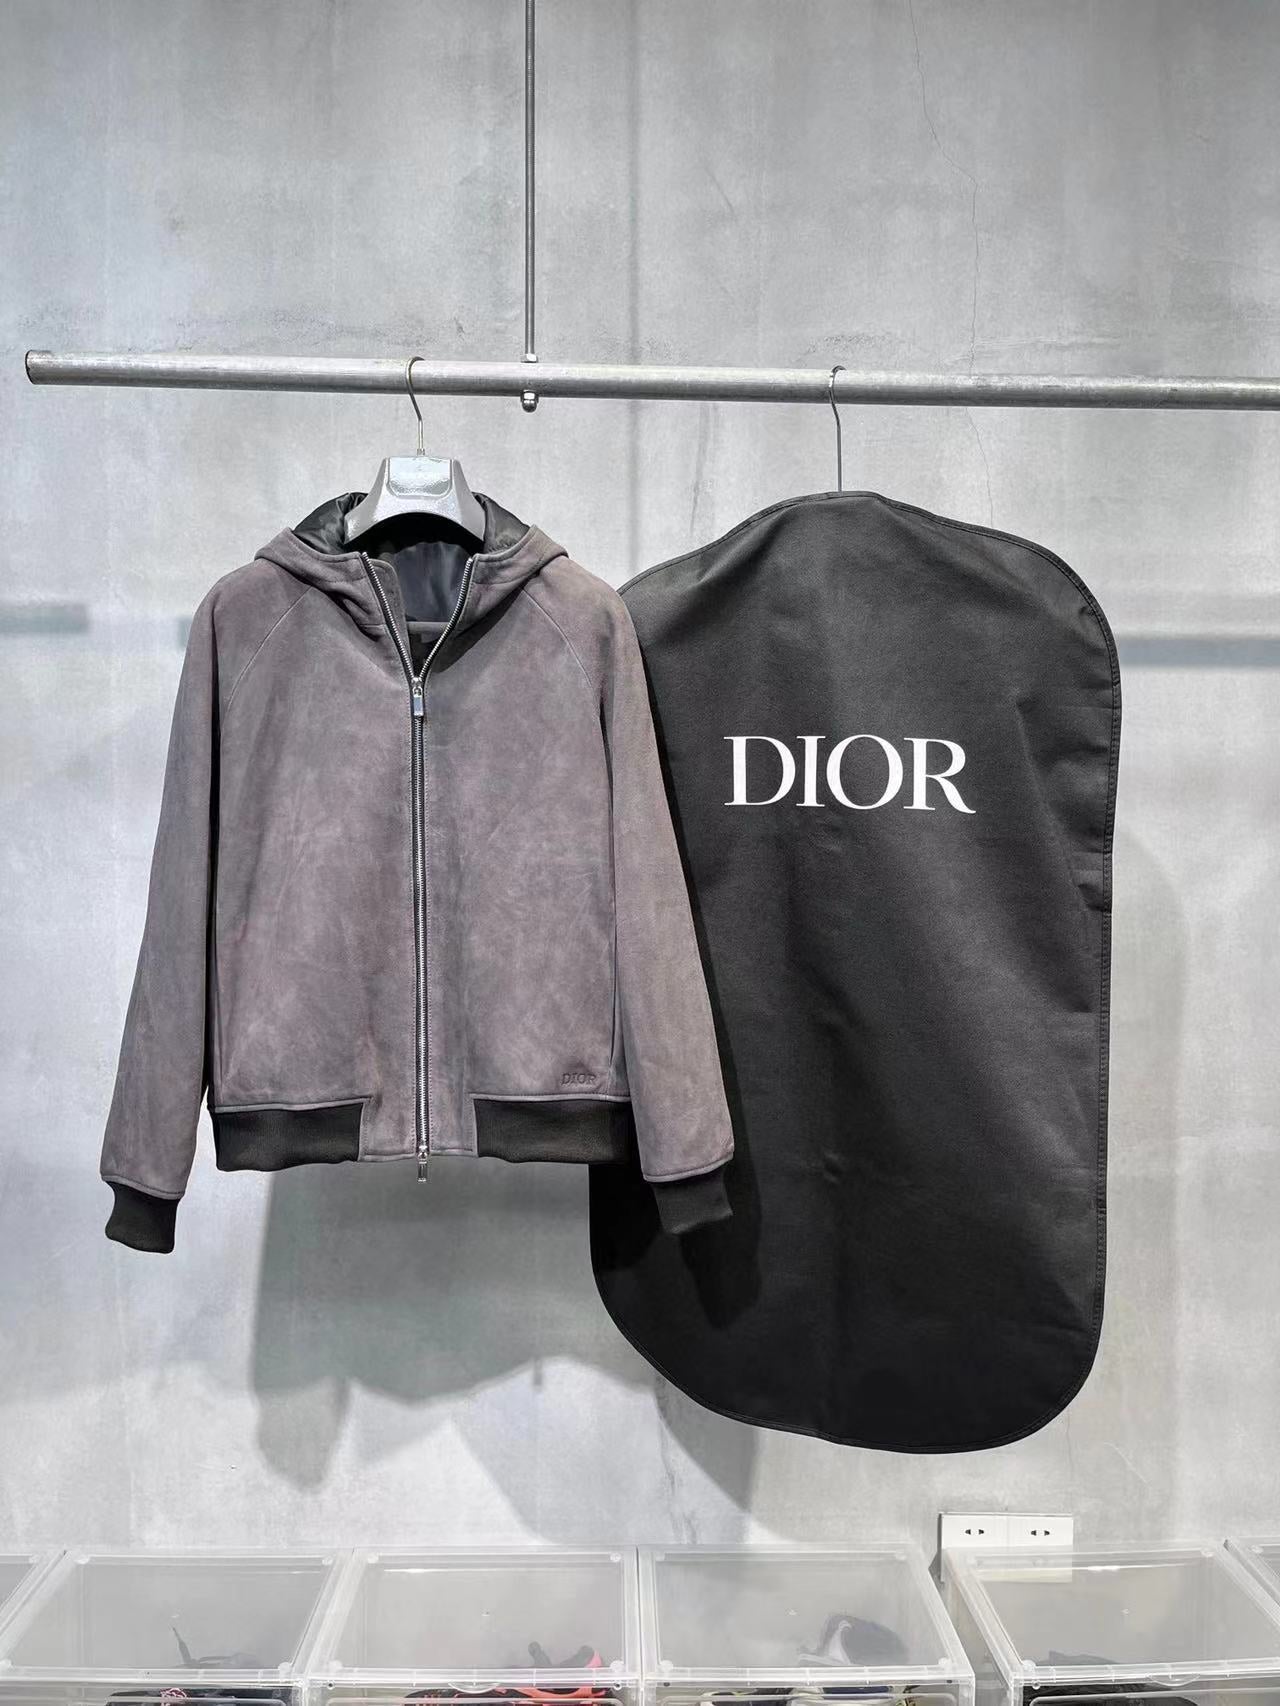 Dior suede hooded jacket